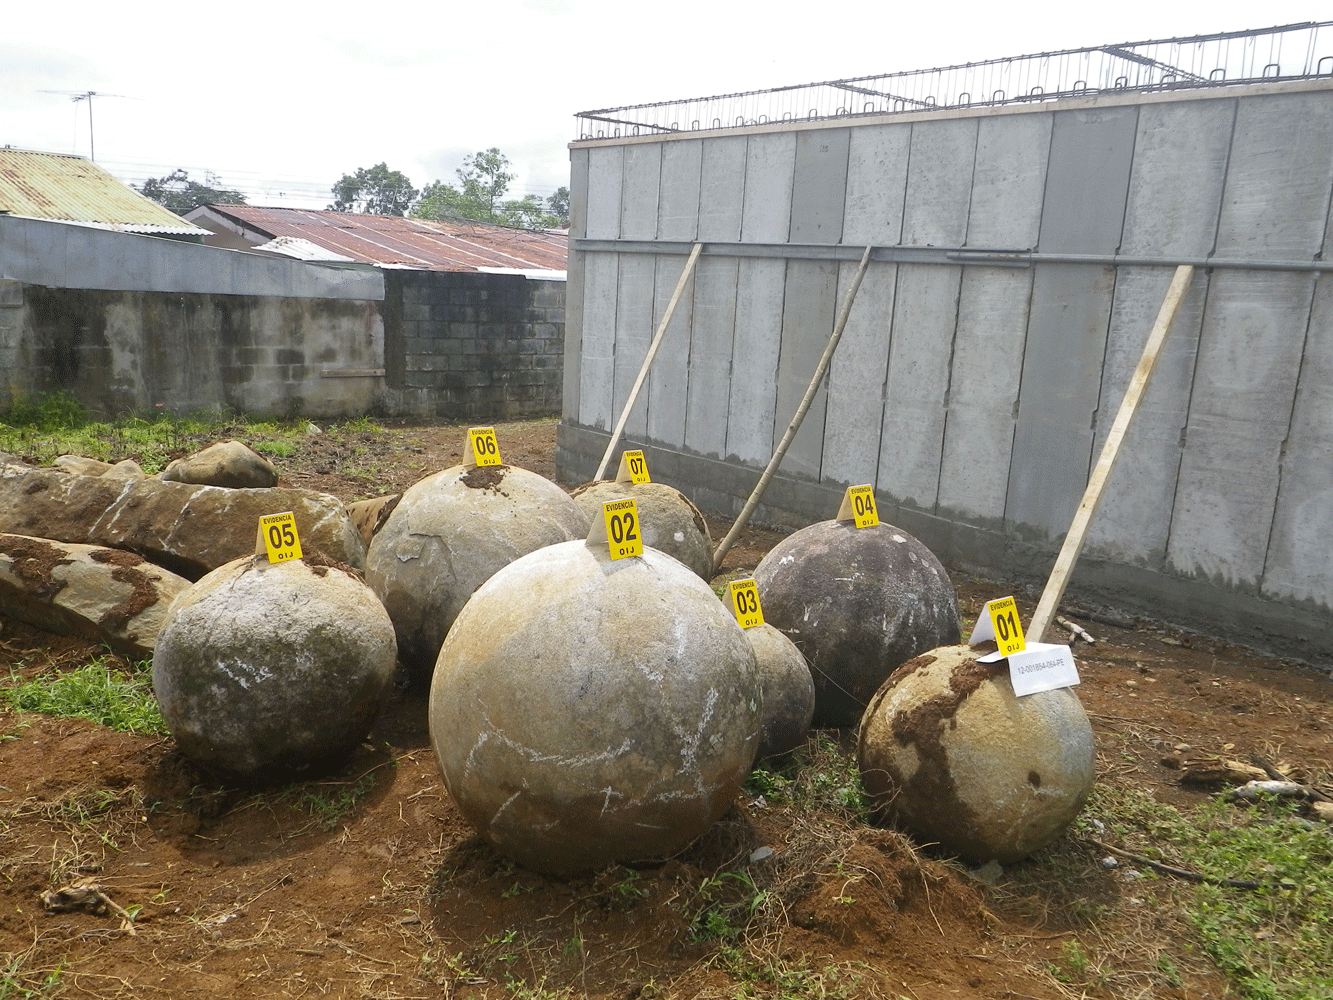 Esferas durante un proceso de recuperación de tenencia ilegal de bienes arqueológicos.